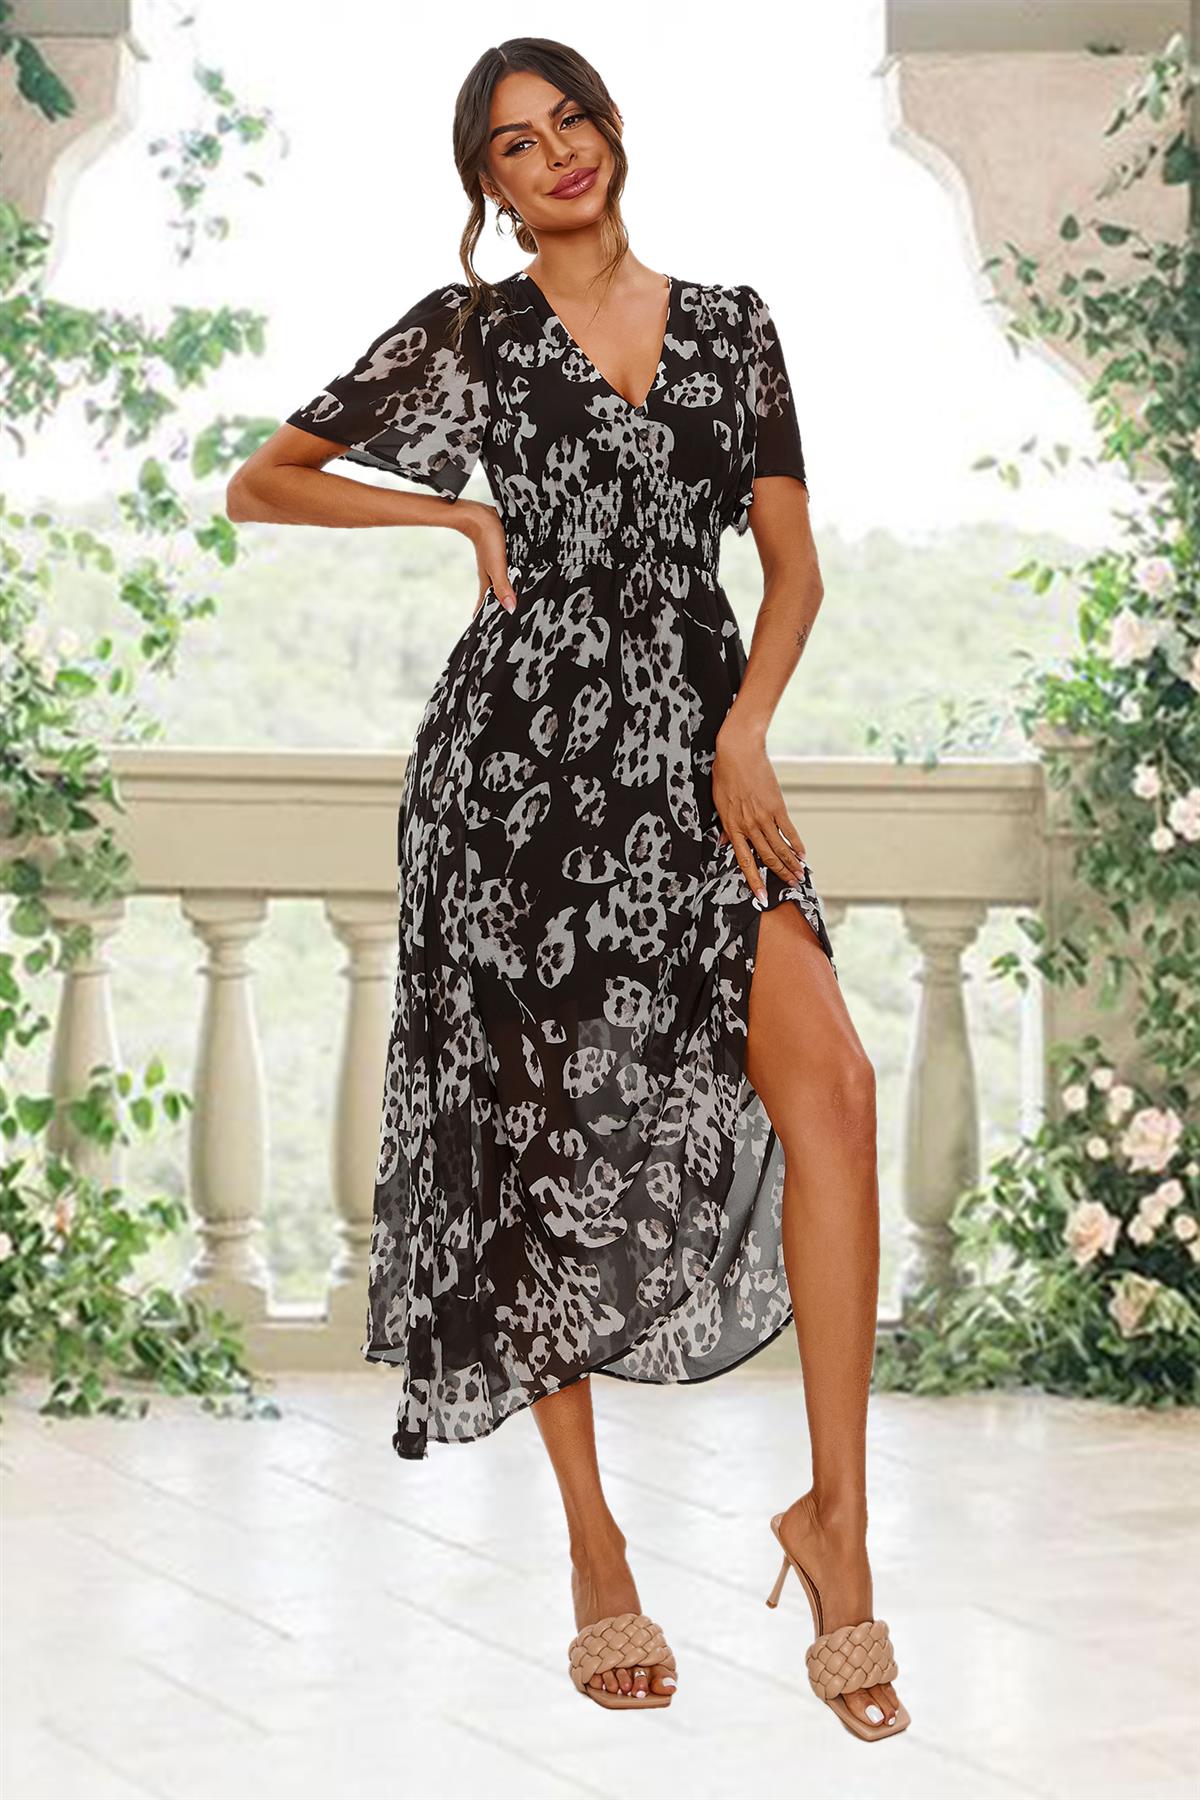 Leopard Floral Print Angel Sleeve Maxi Dress In Black FS641-BlackLF